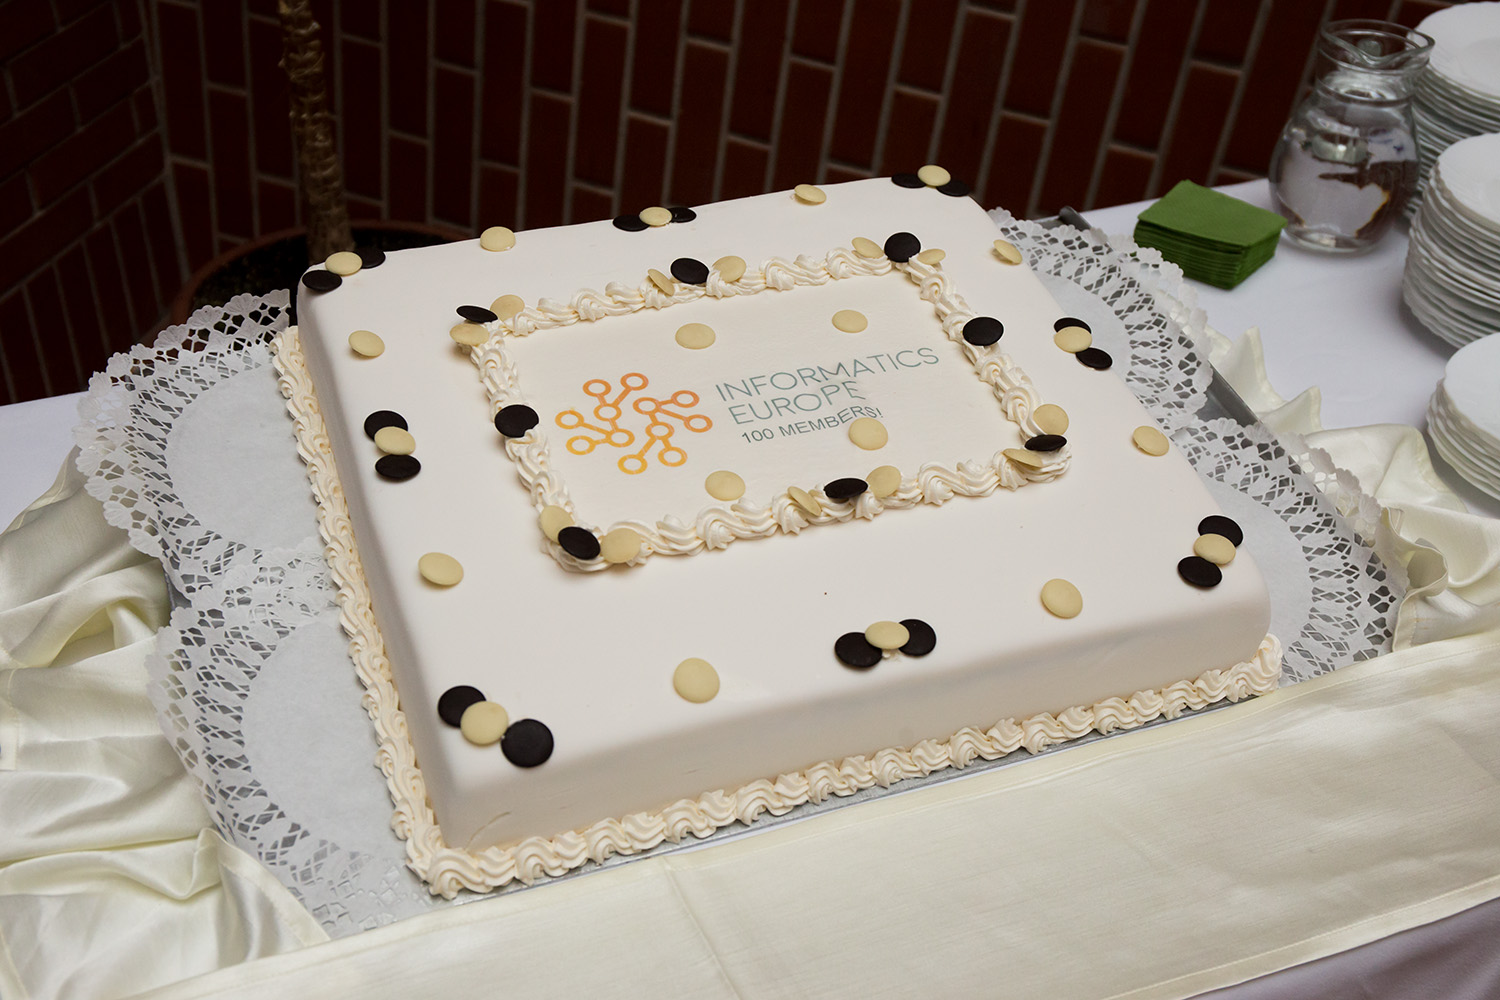 100 Member Milestone cake